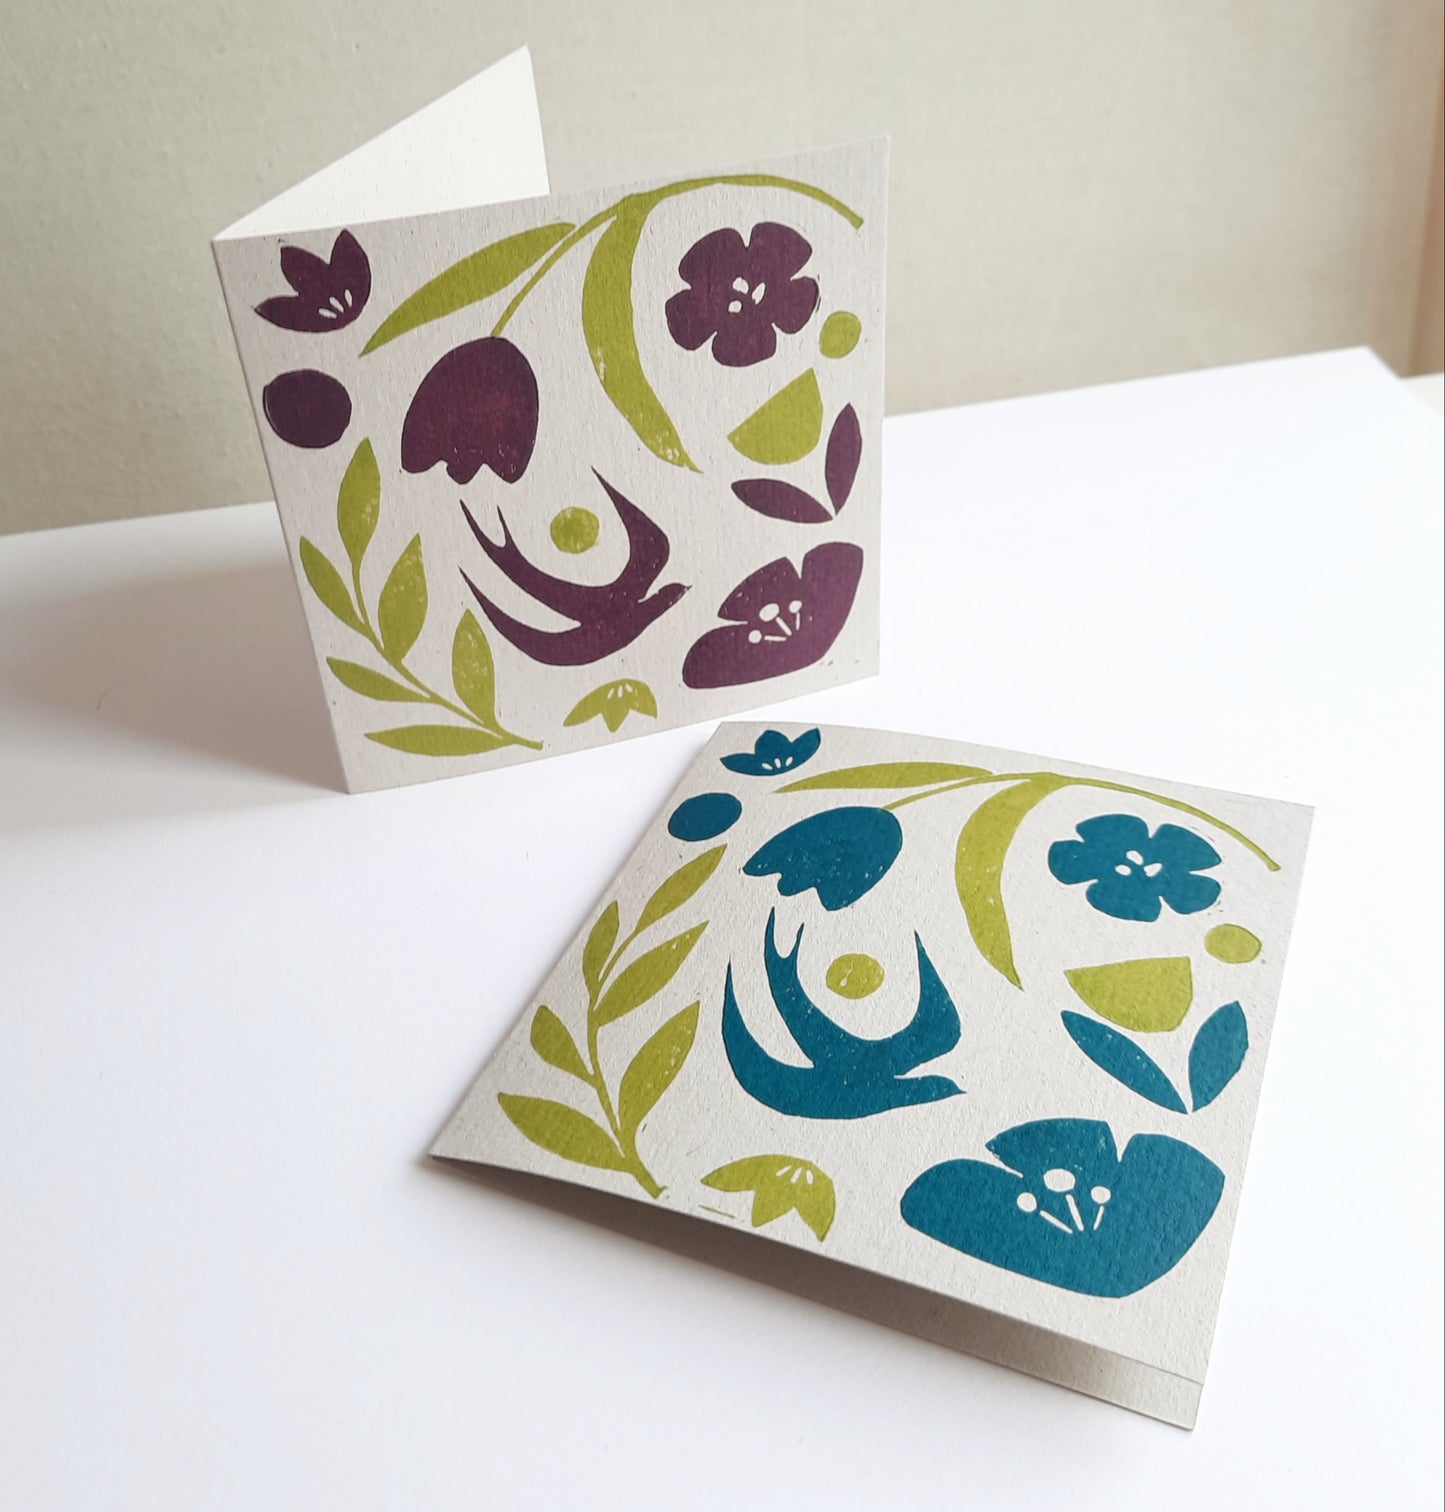 In Bloom - Hand printed Greetings Card | Floral Pattern | Birthday